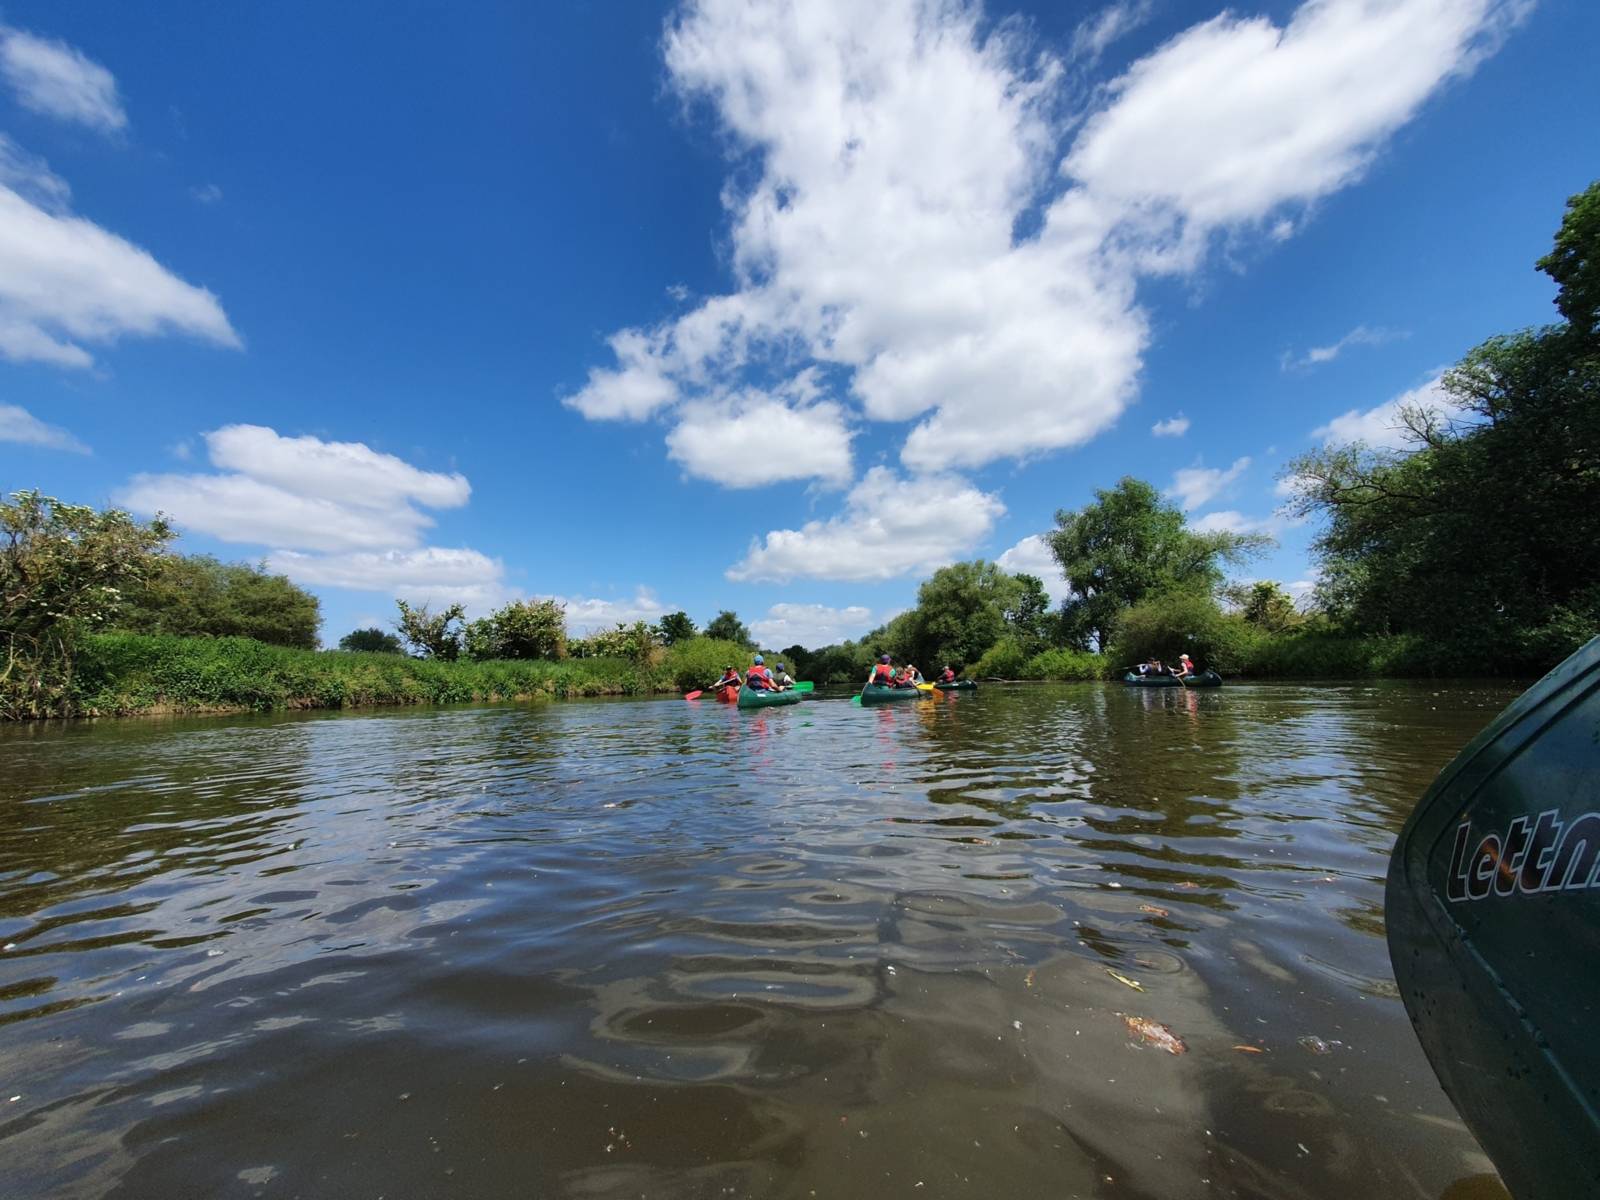 Blick nach vorn aus der Mitte des Flusses: In der Entfernung sechs bunte Paddelboote, rechts und links die grünbewachsenen Ufer, ein blauer Himmel mit Zirruswolken